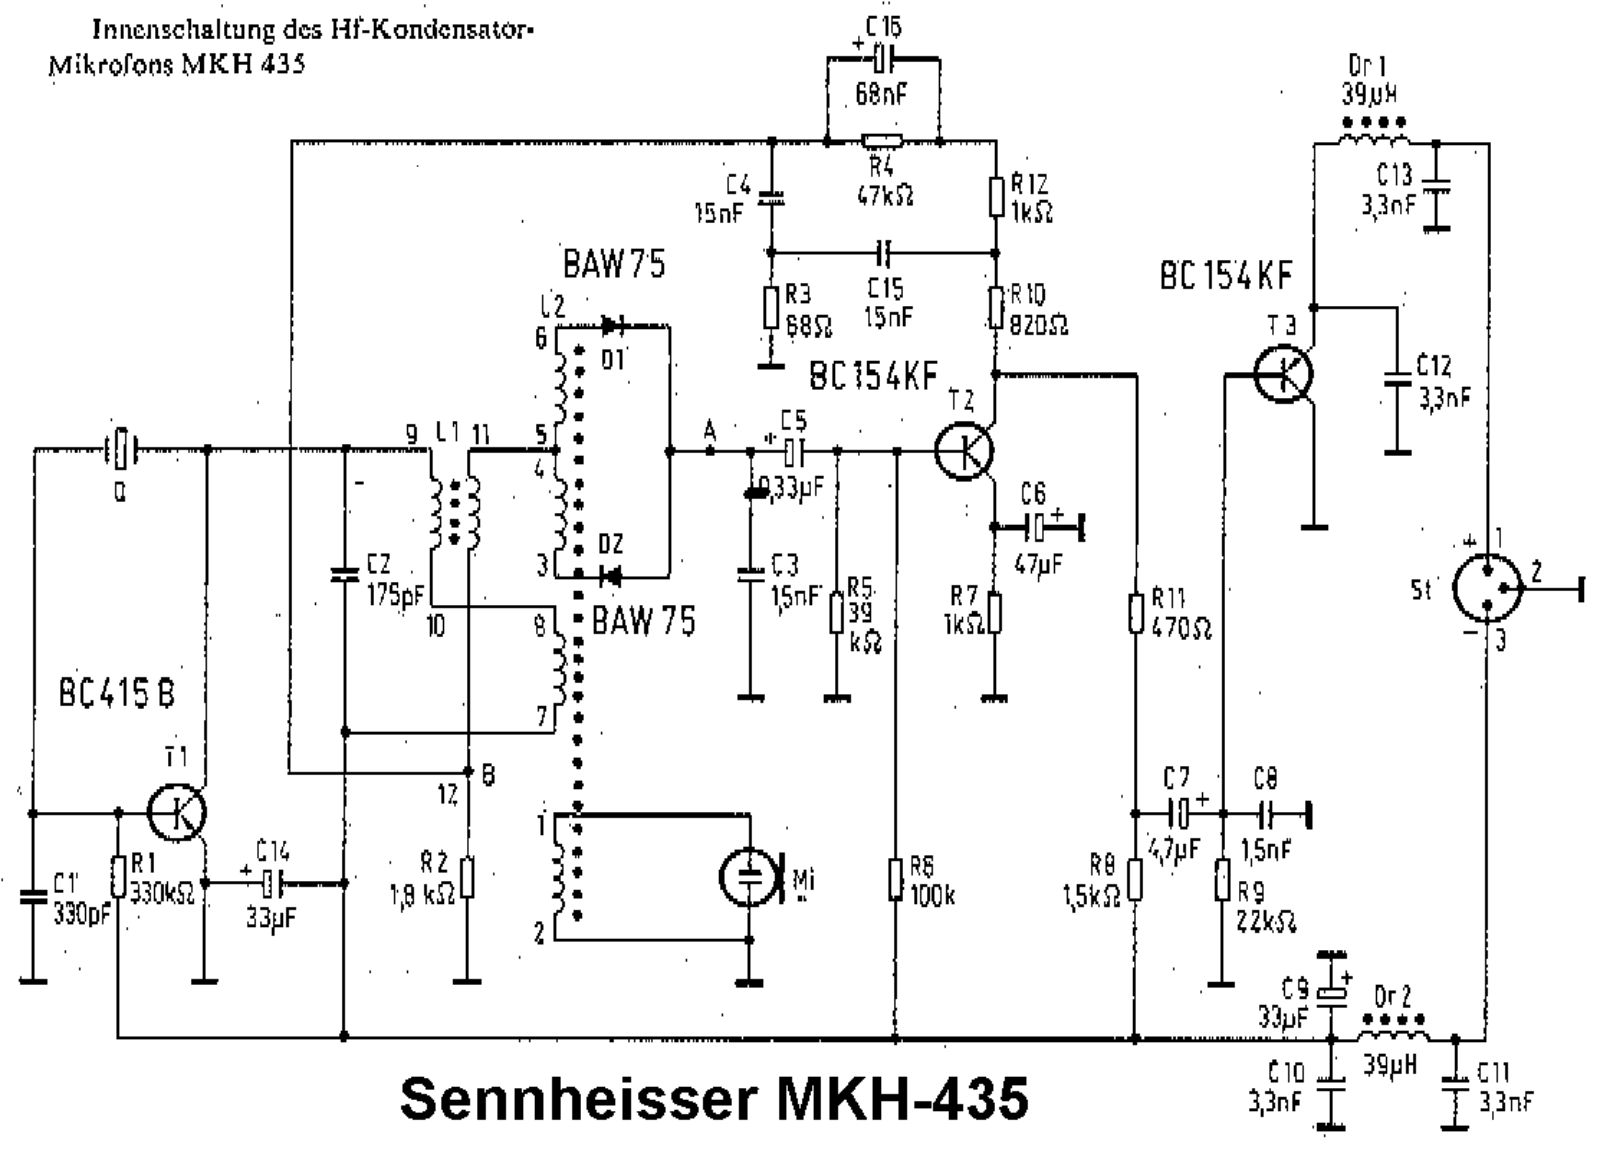 Sennheiser mkh 435 schematic